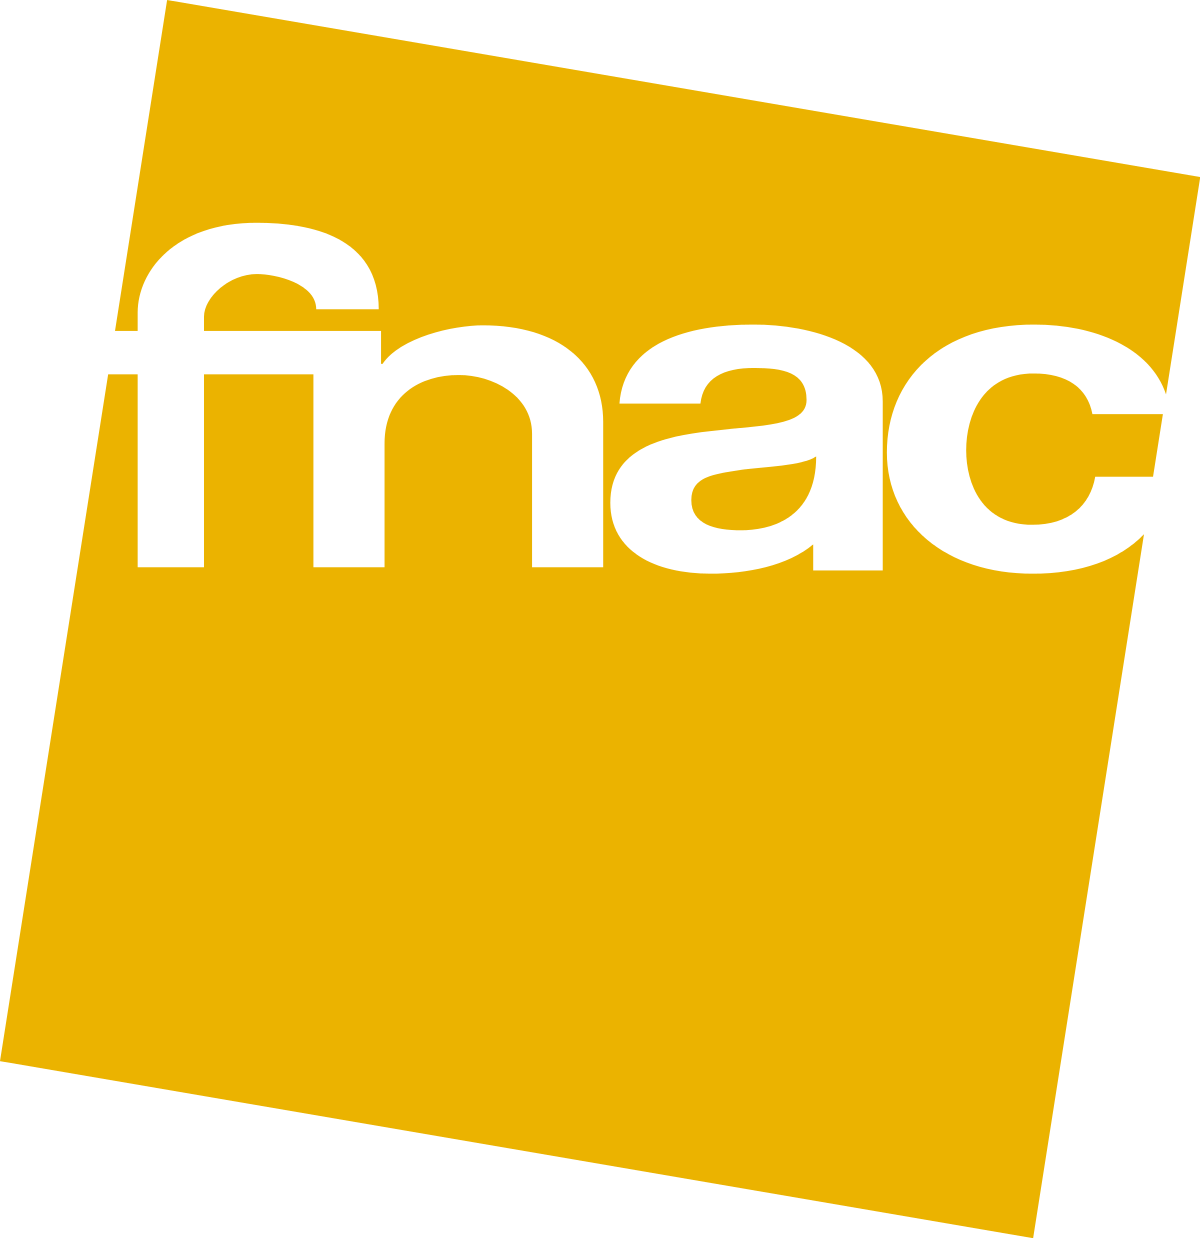 Fnac_Logo.svg.png